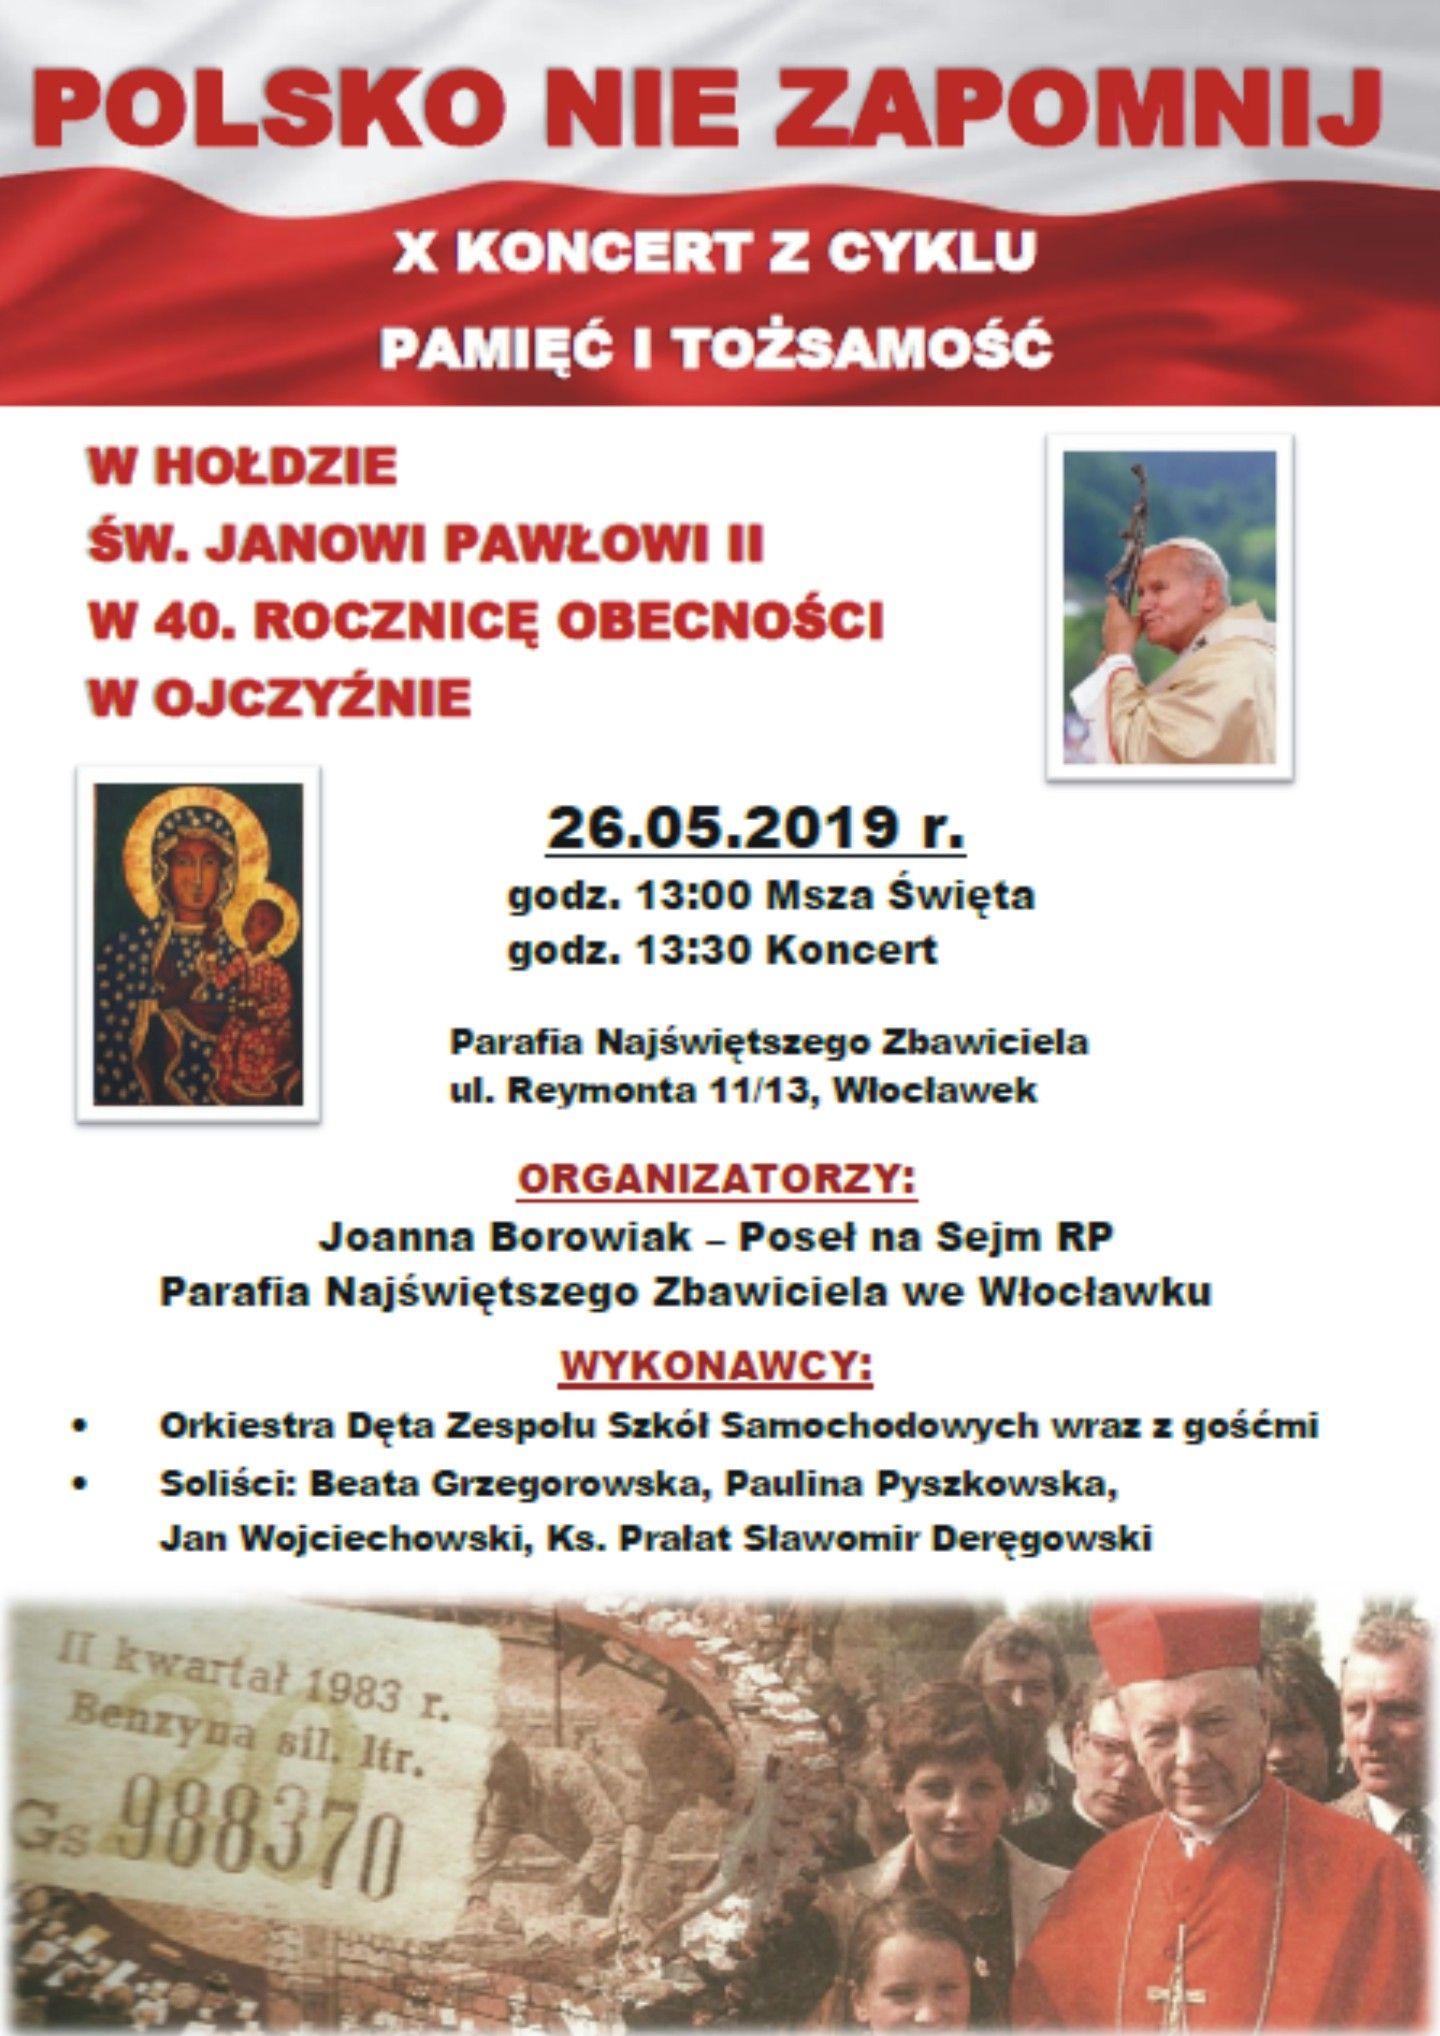 Koncert w hołdzie św. Janowi Pawłowi II (zaproszenie)